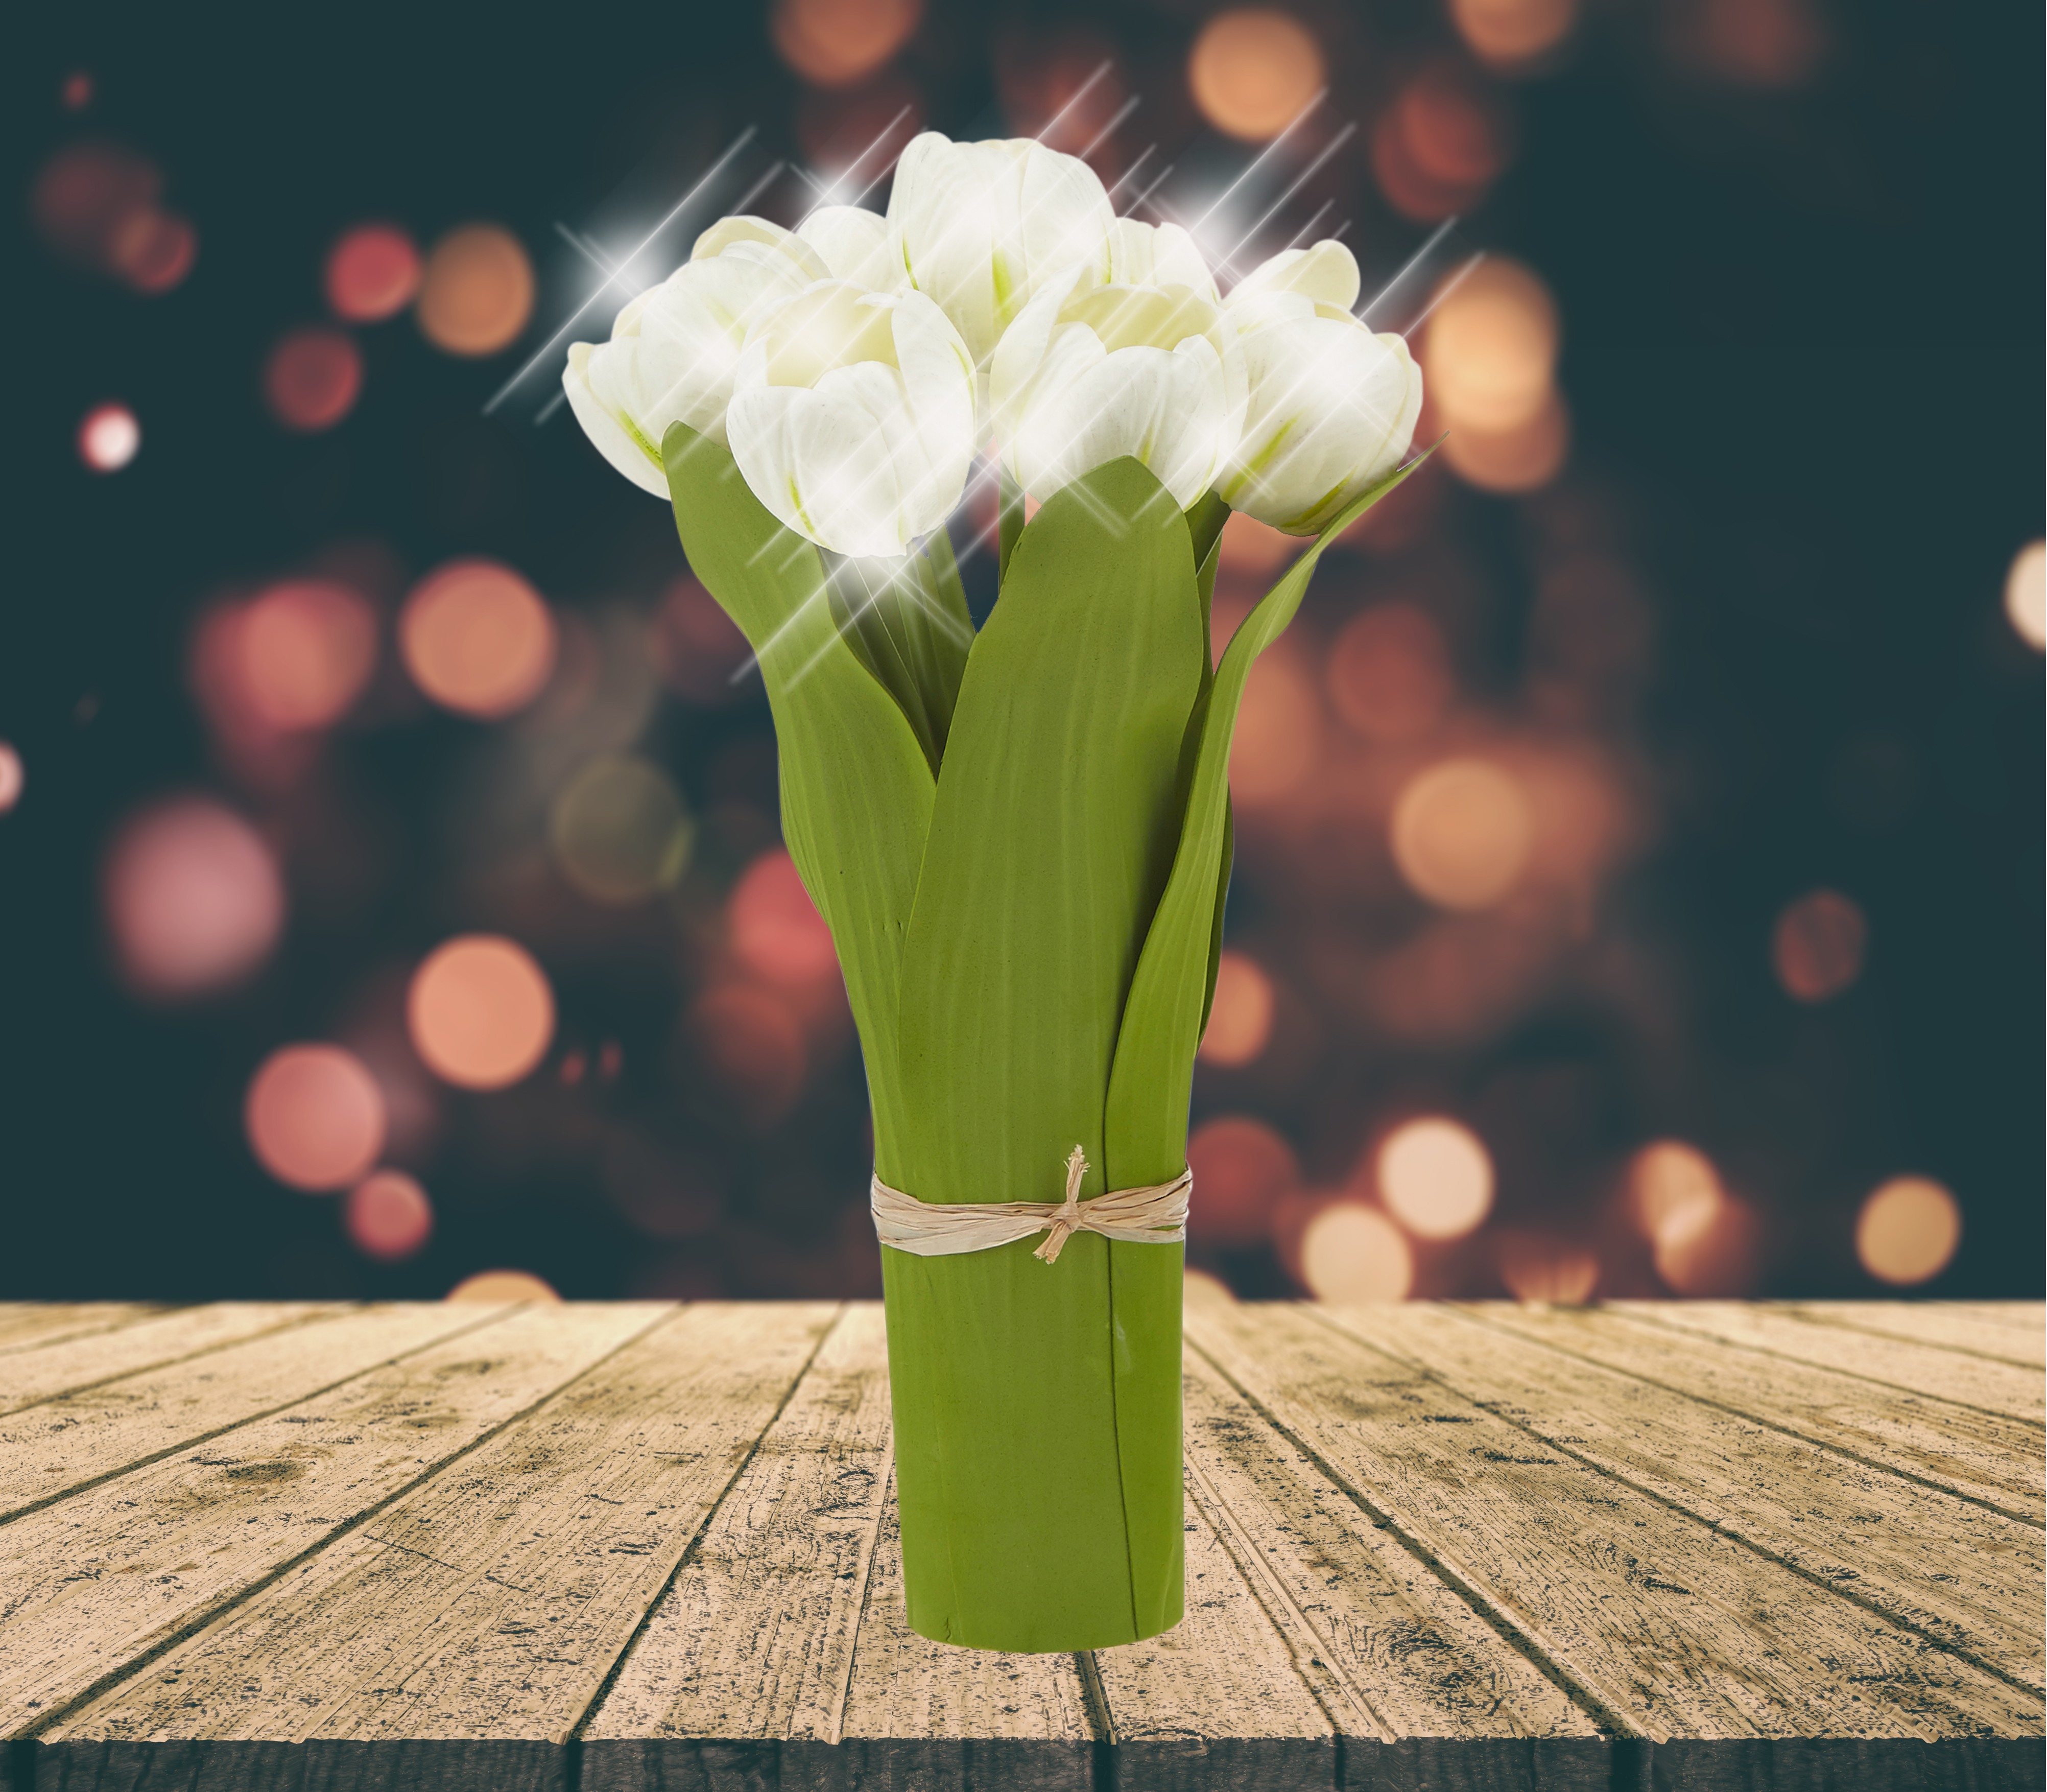 Lampe LED Bouquet de tulipes blanches